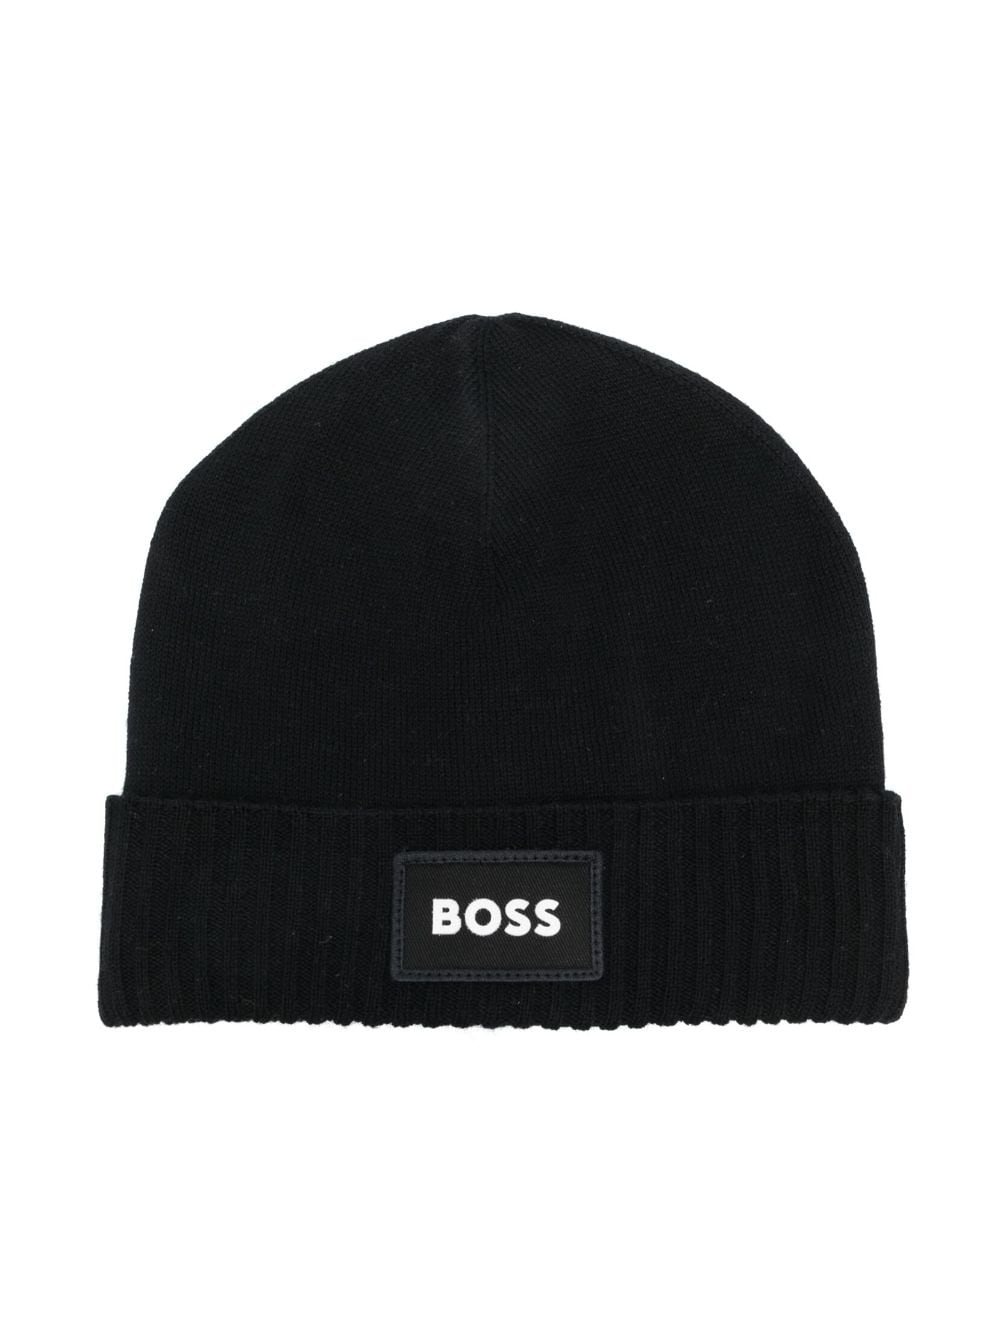 BOSS Kidswear embroidered-logo beanie hat - Black von BOSS Kidswear